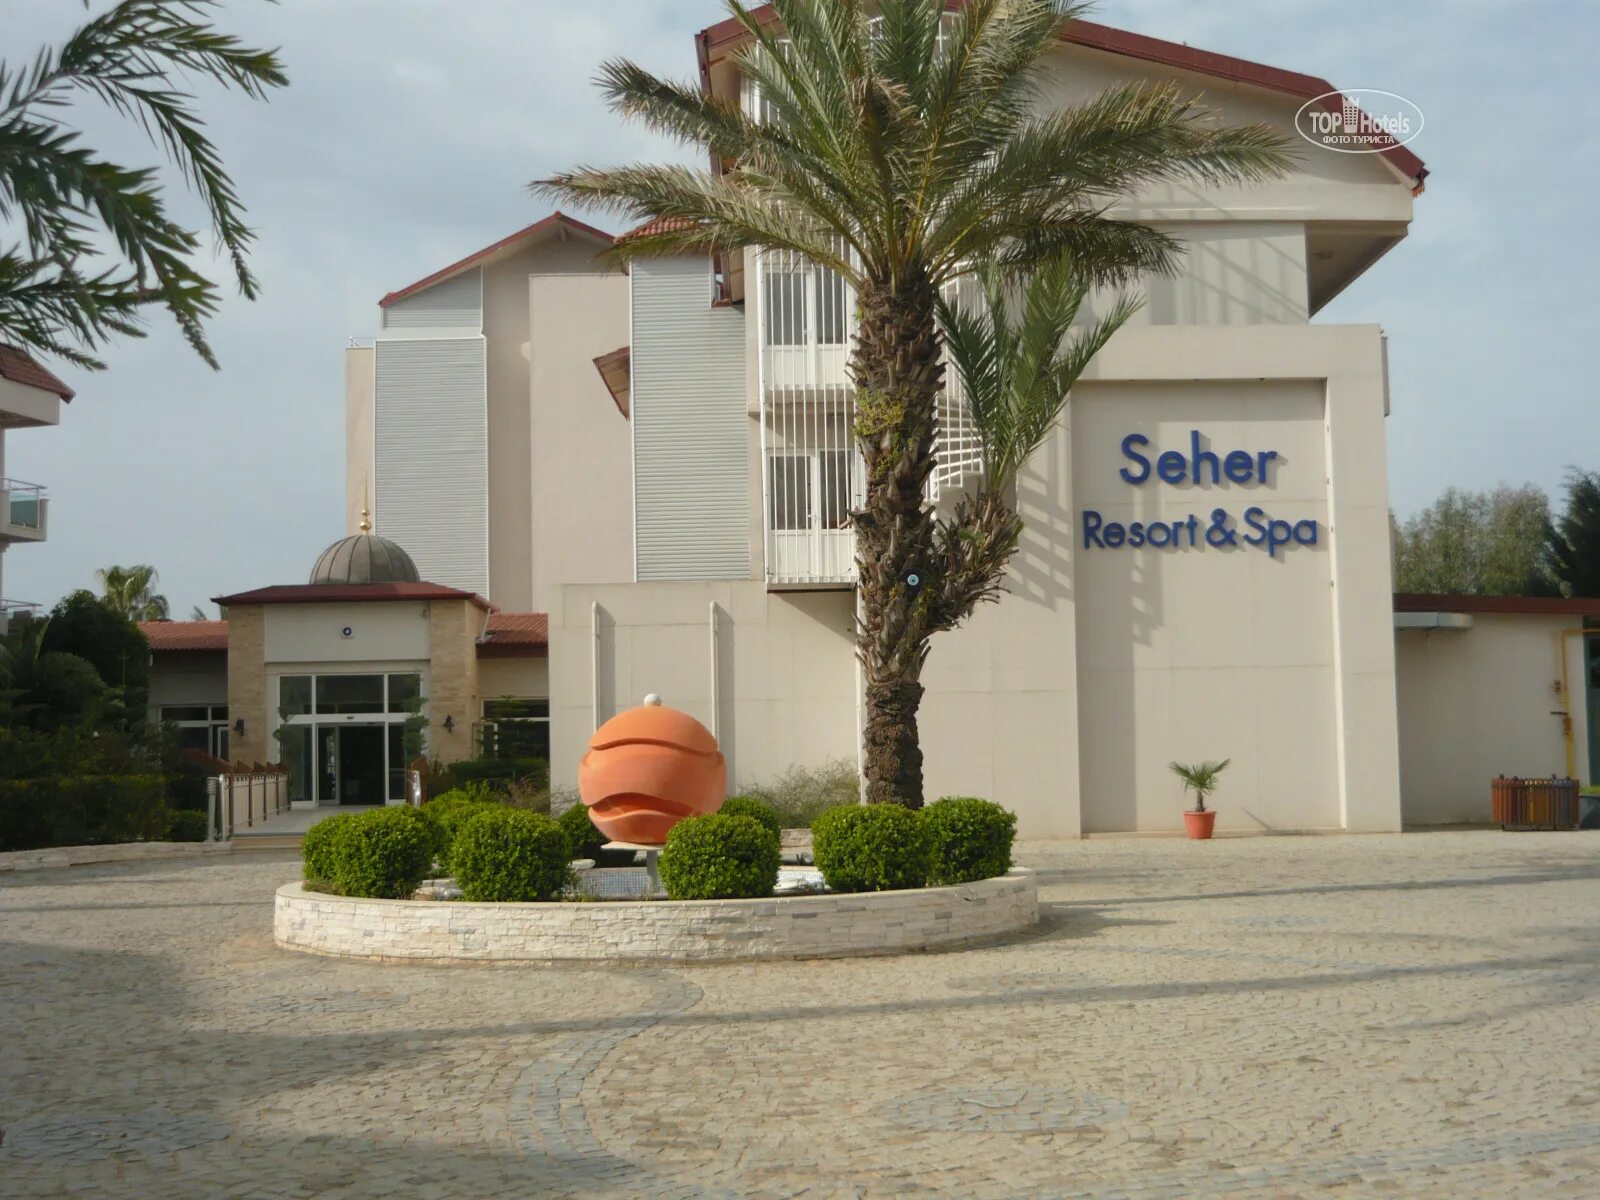 Seher resort hotel 5. Seher Resort Spa 5 Сиде. Шехер Резорт. Сехер Резорт спа 5 Сиде Турция отель. Сехер ру.